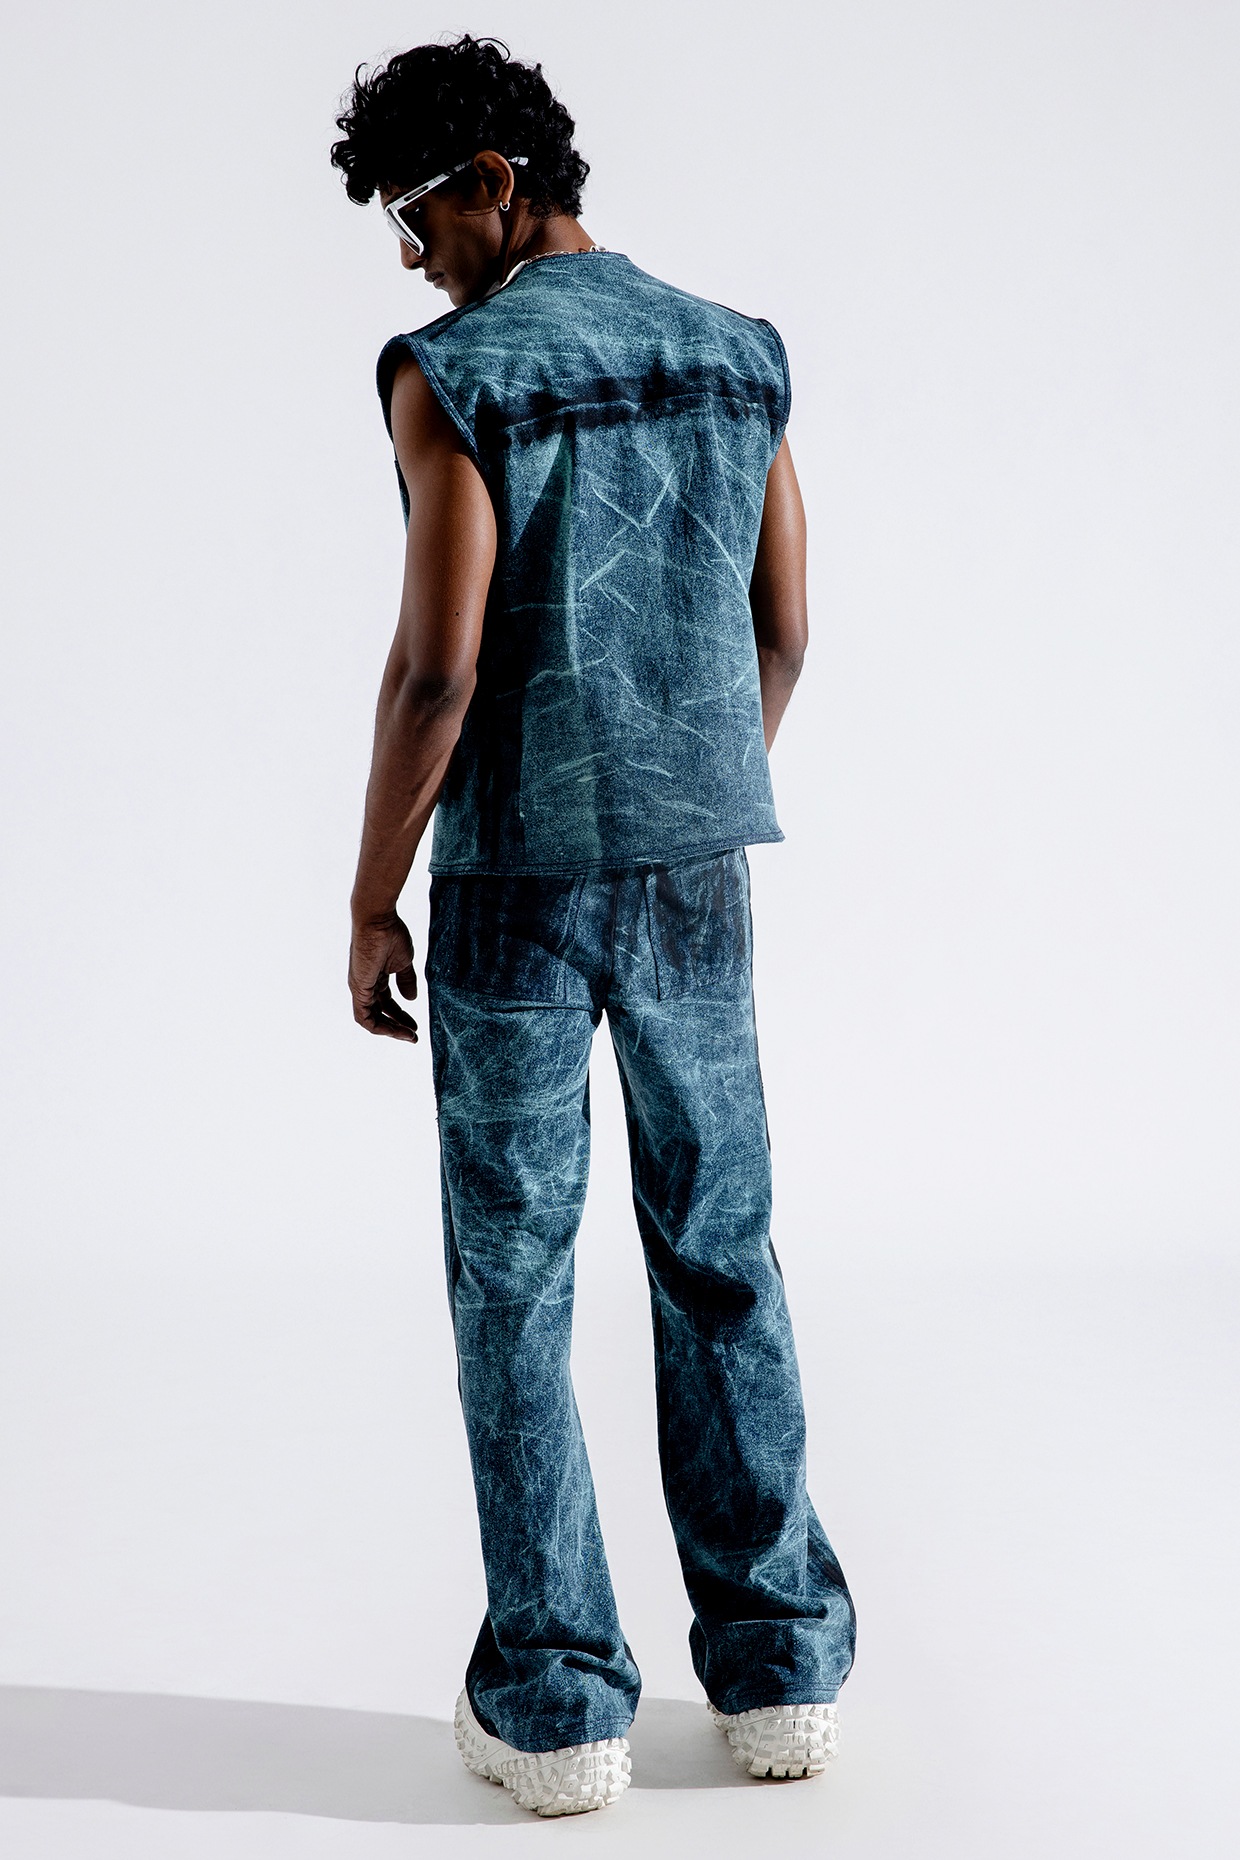 Buy Designer Jeans for Girls - @ Rs 649 | Urbane Yogi